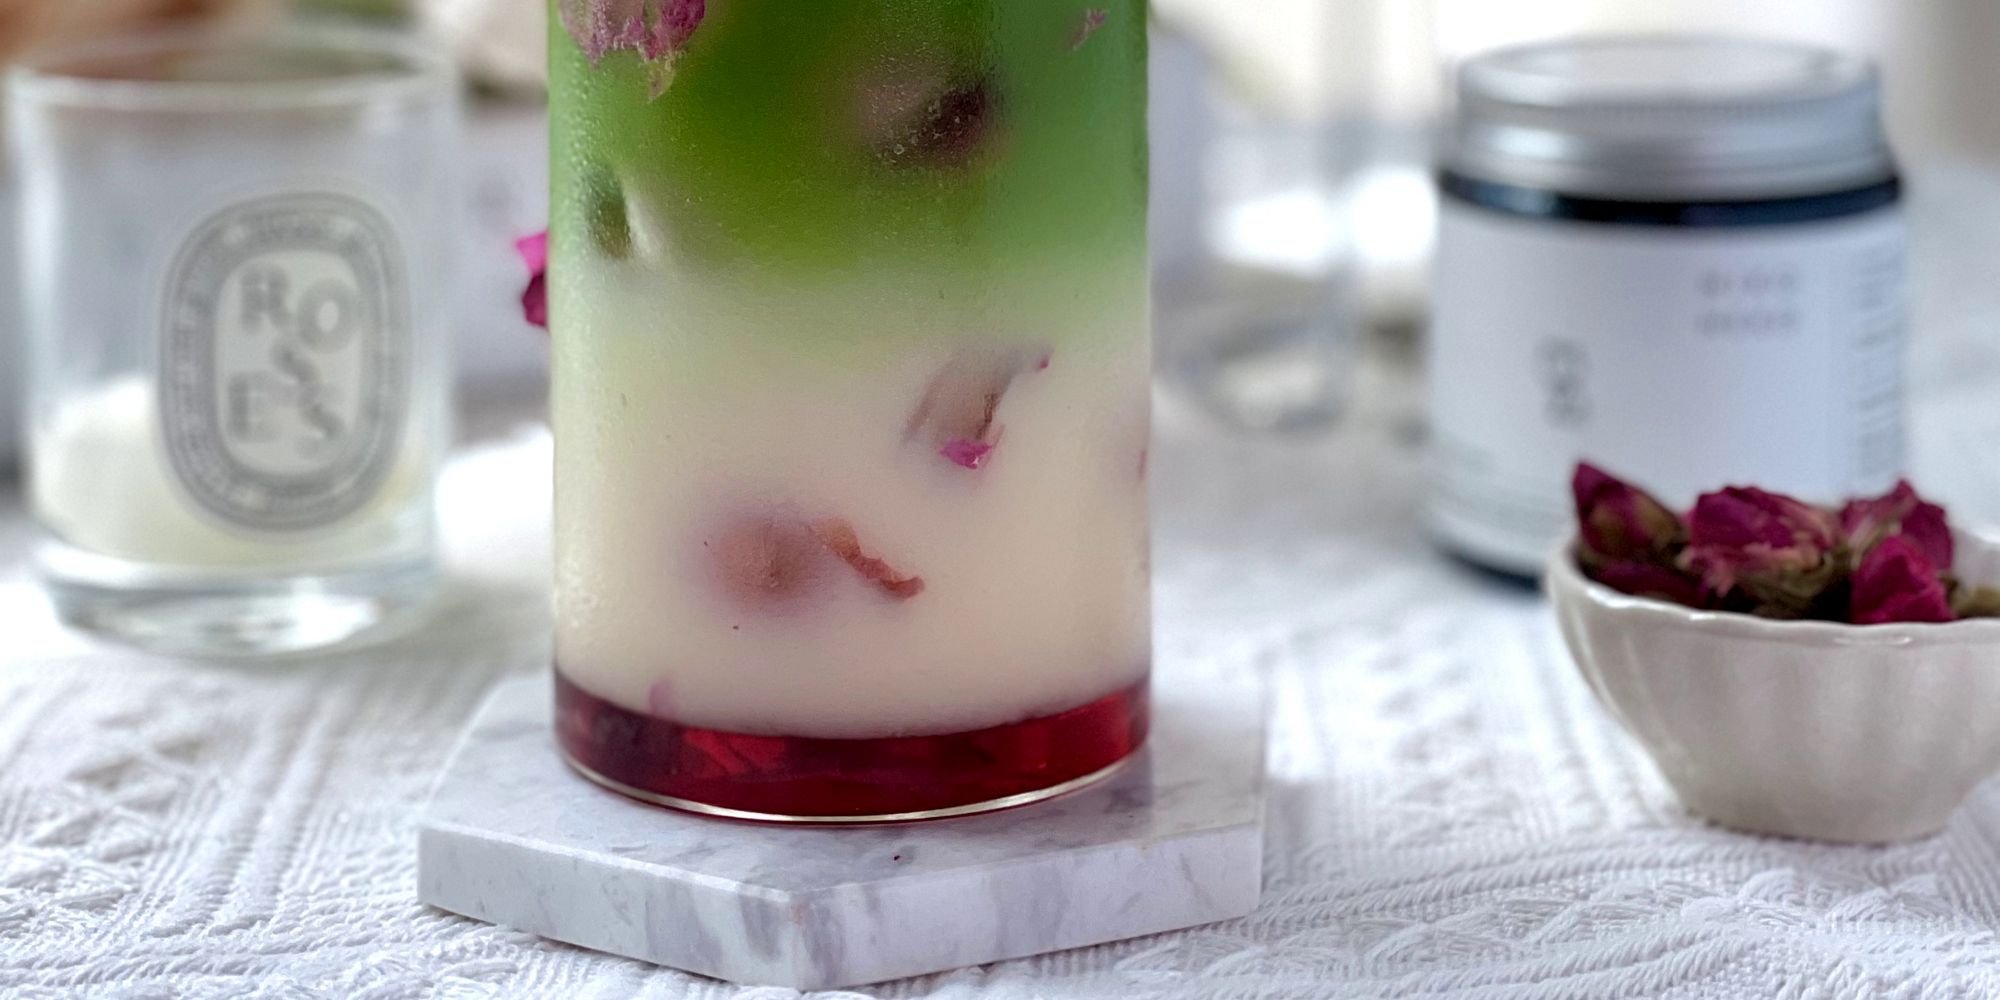 Rosie Matcha Yogurt Recipe using REN / Matcha powder